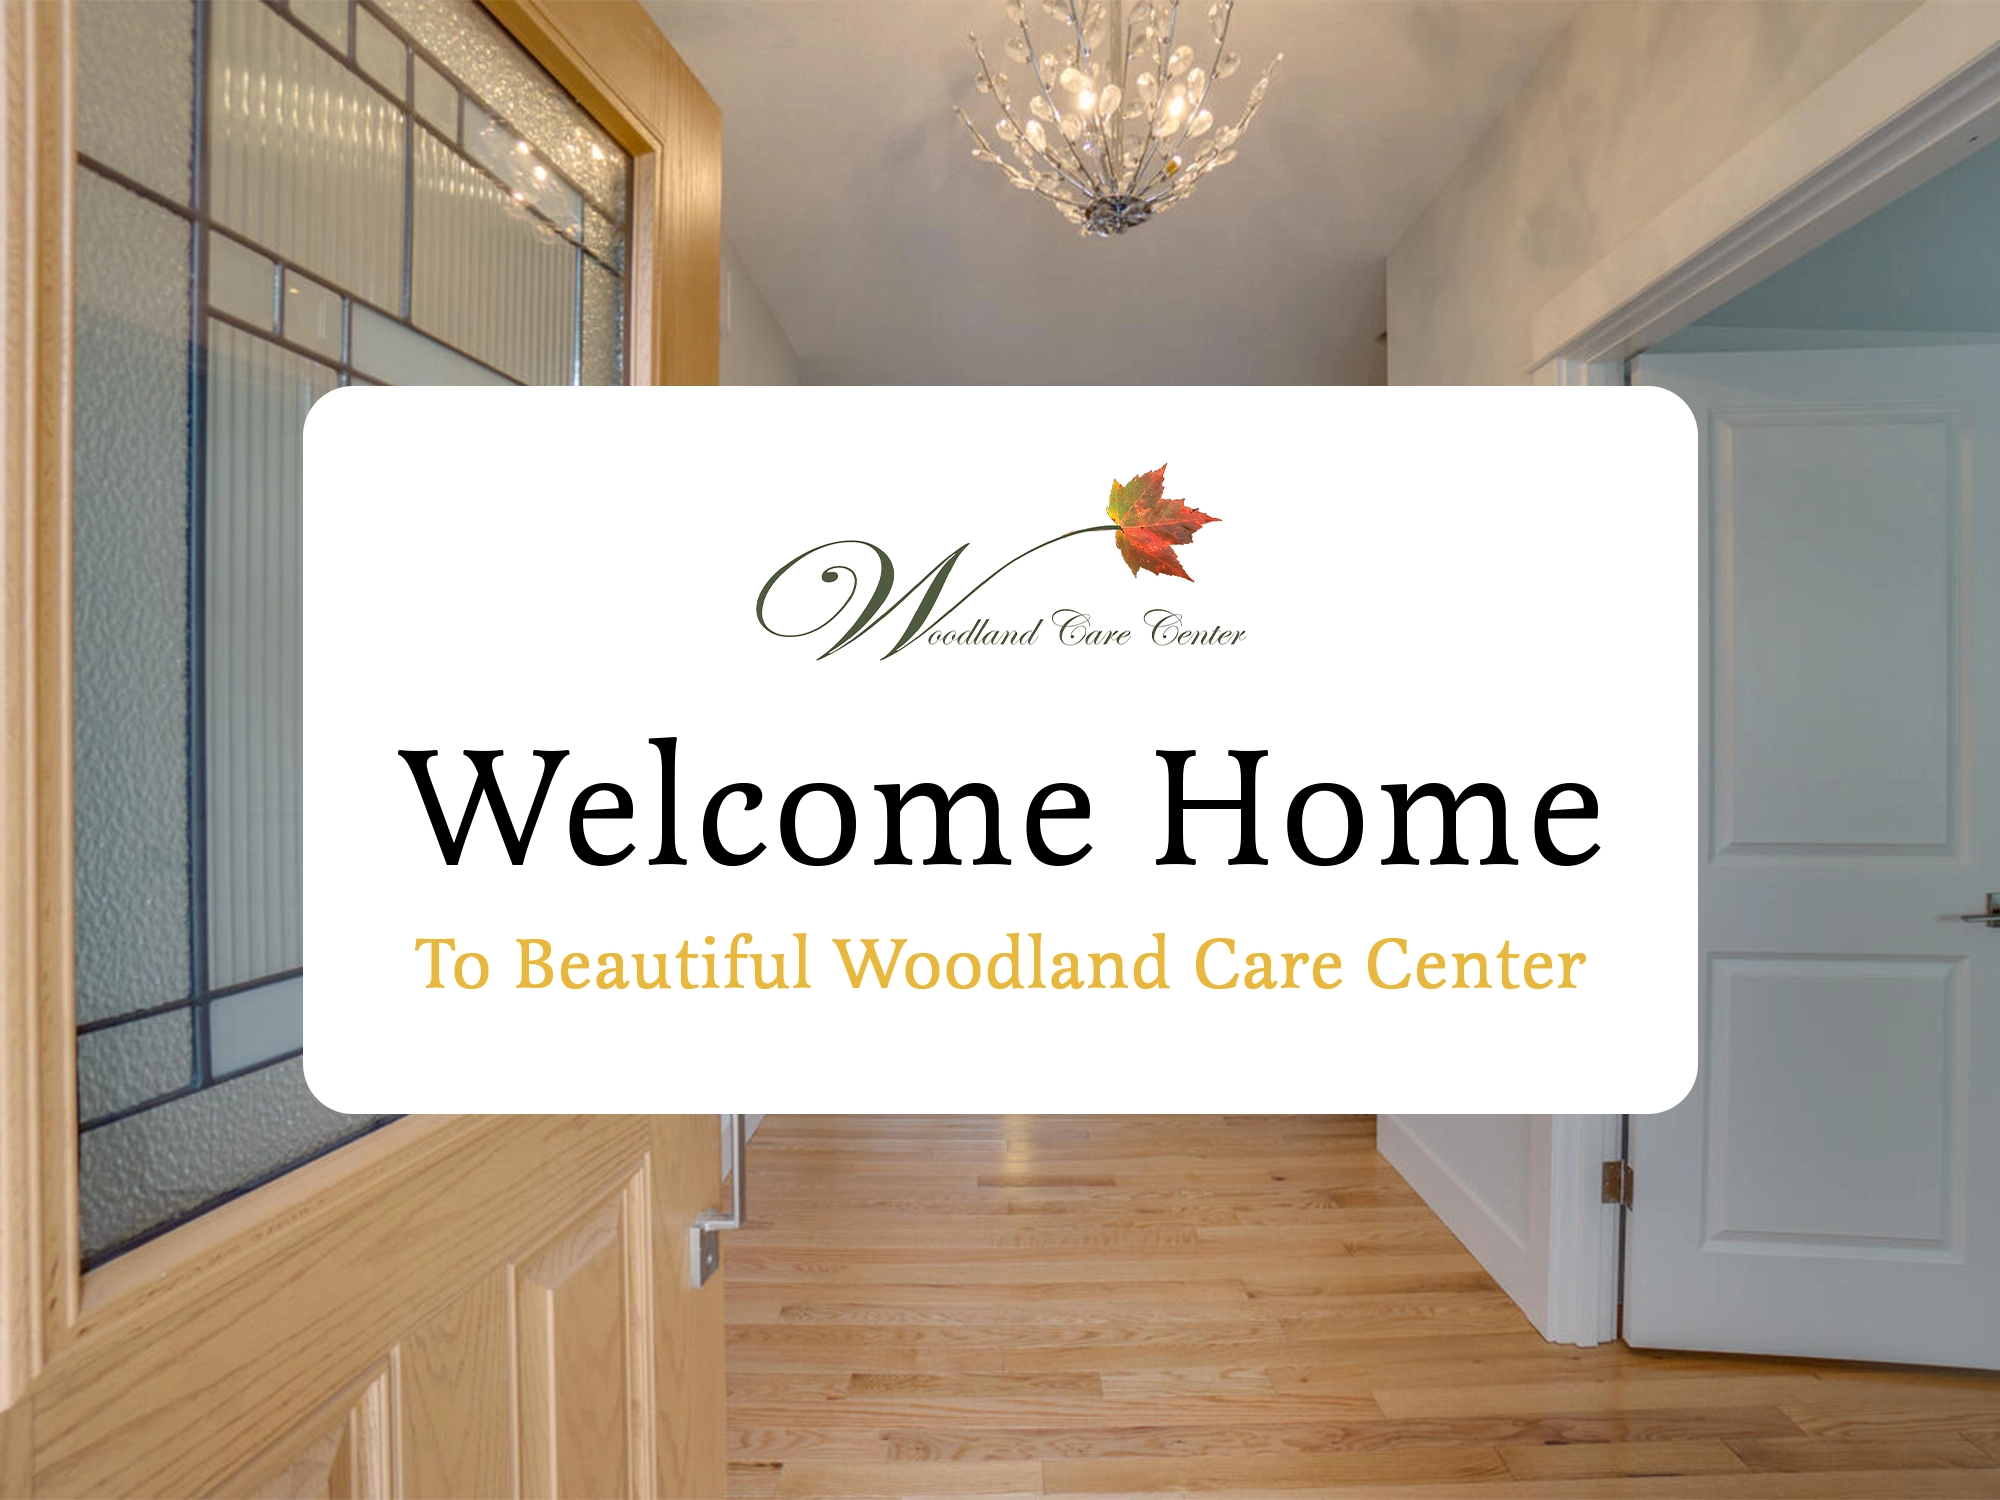 Woodland Care Center